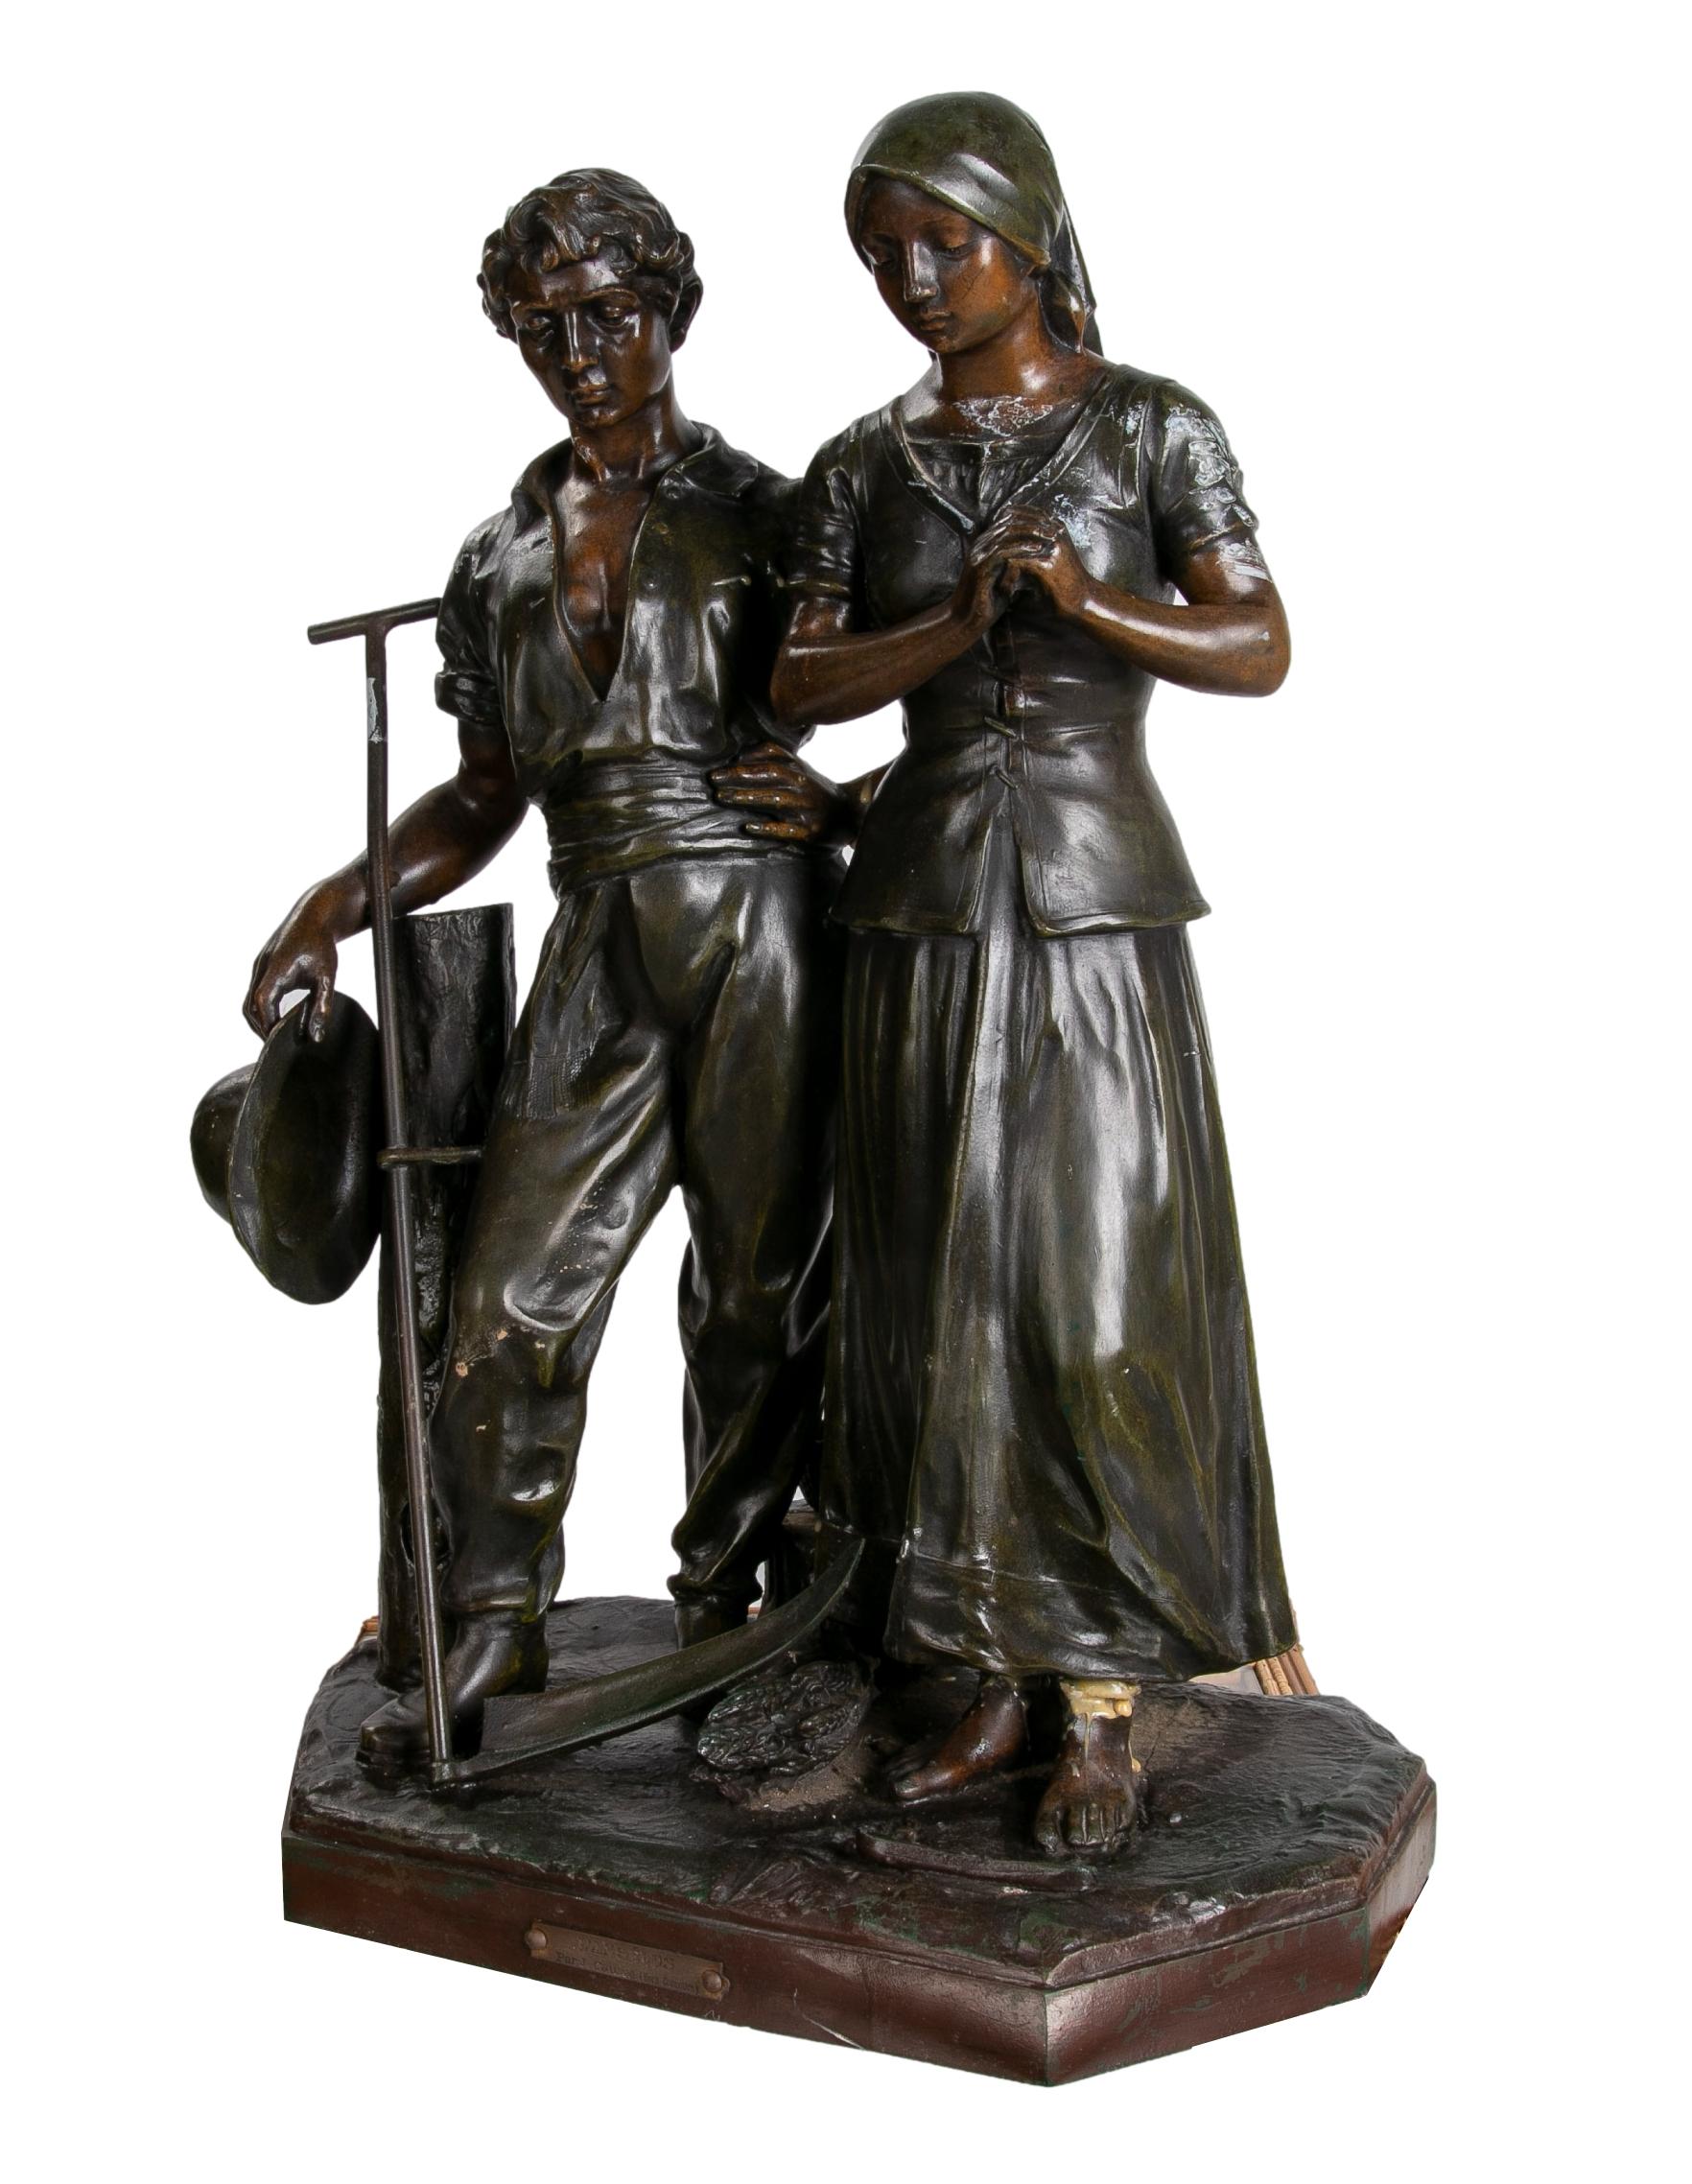 Antique Julien Caussé, ca 1890 French cast bronze figure sculpture of a period farming couple.